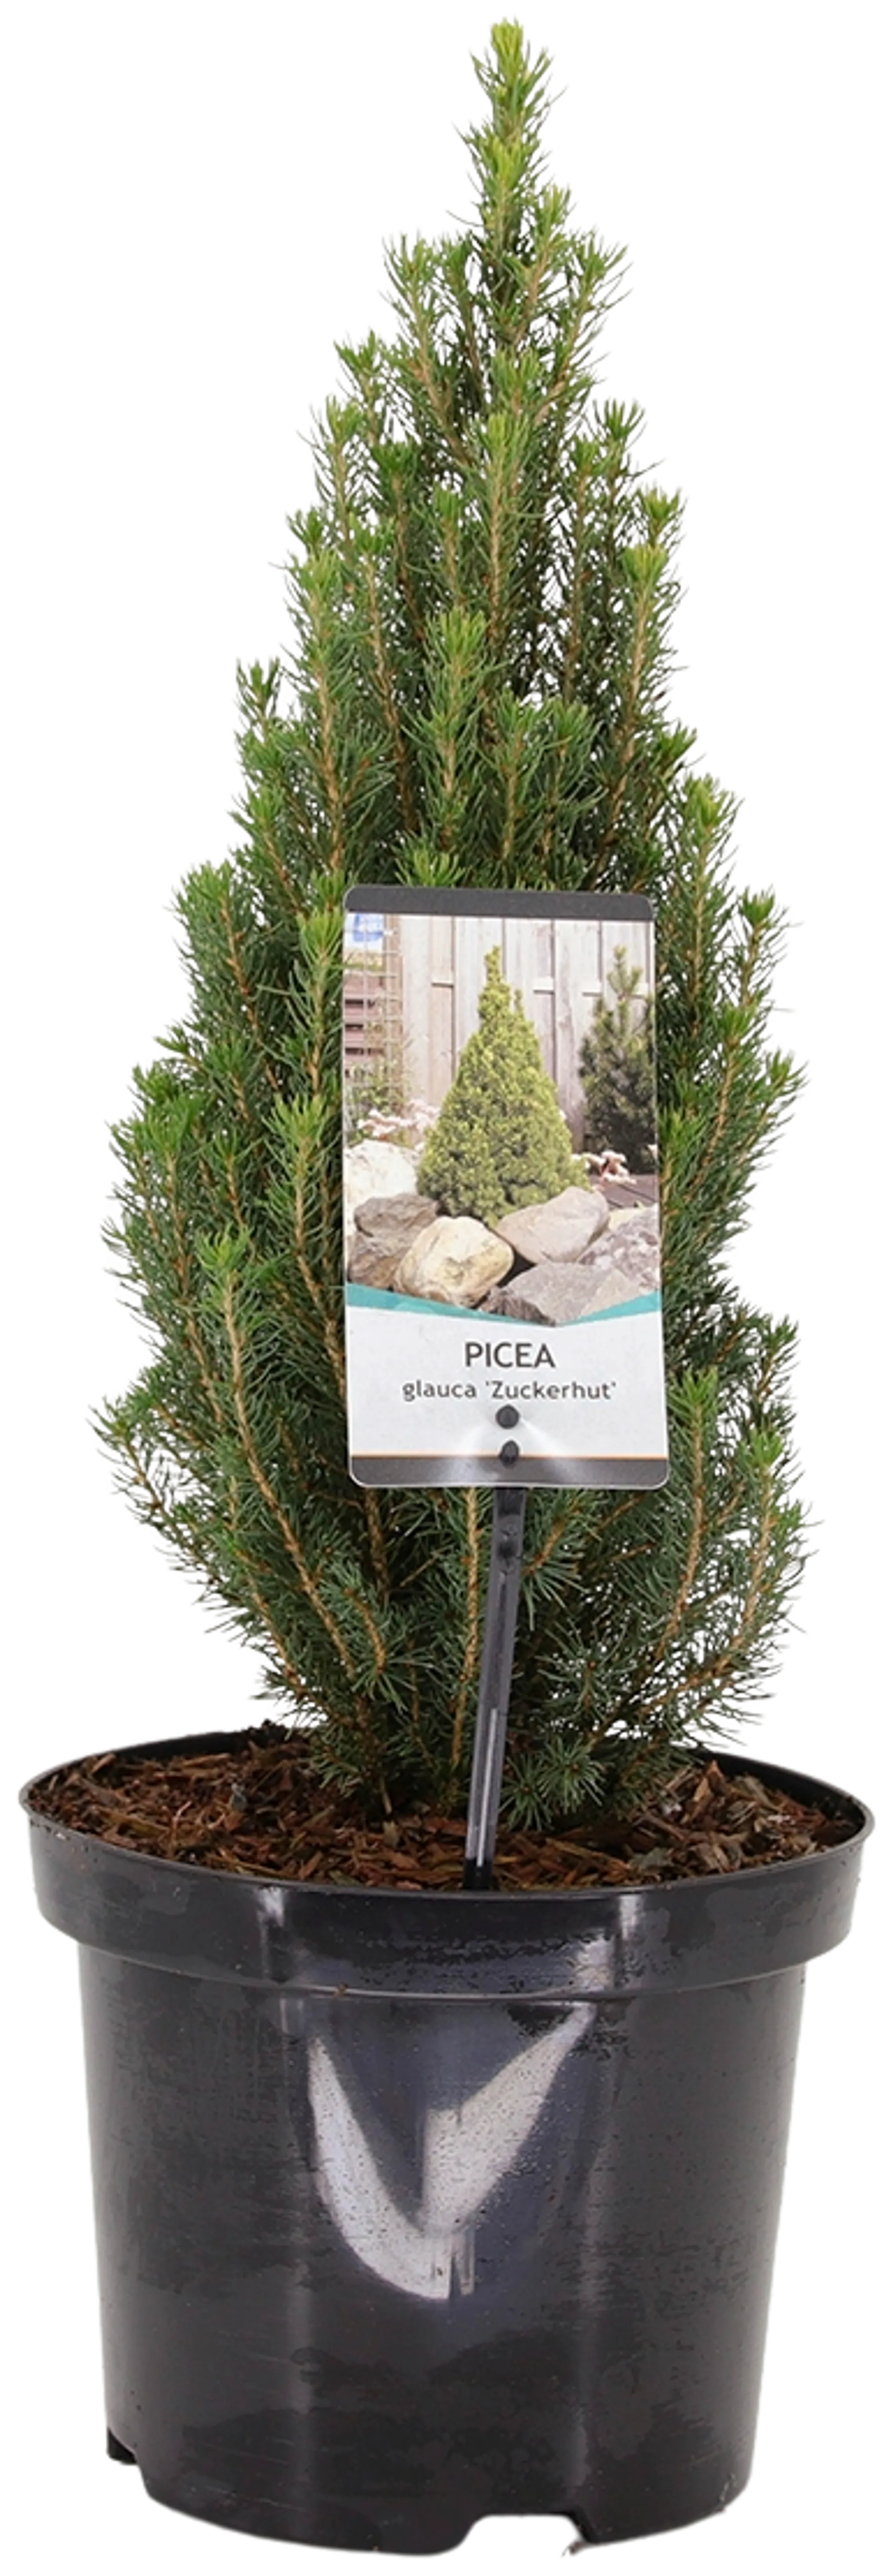 Kartiovalkokuusi 'Zuckerhut' 25-30 cm astiataimi 3 l ruukku Picea glauca 'Zuckerhut'